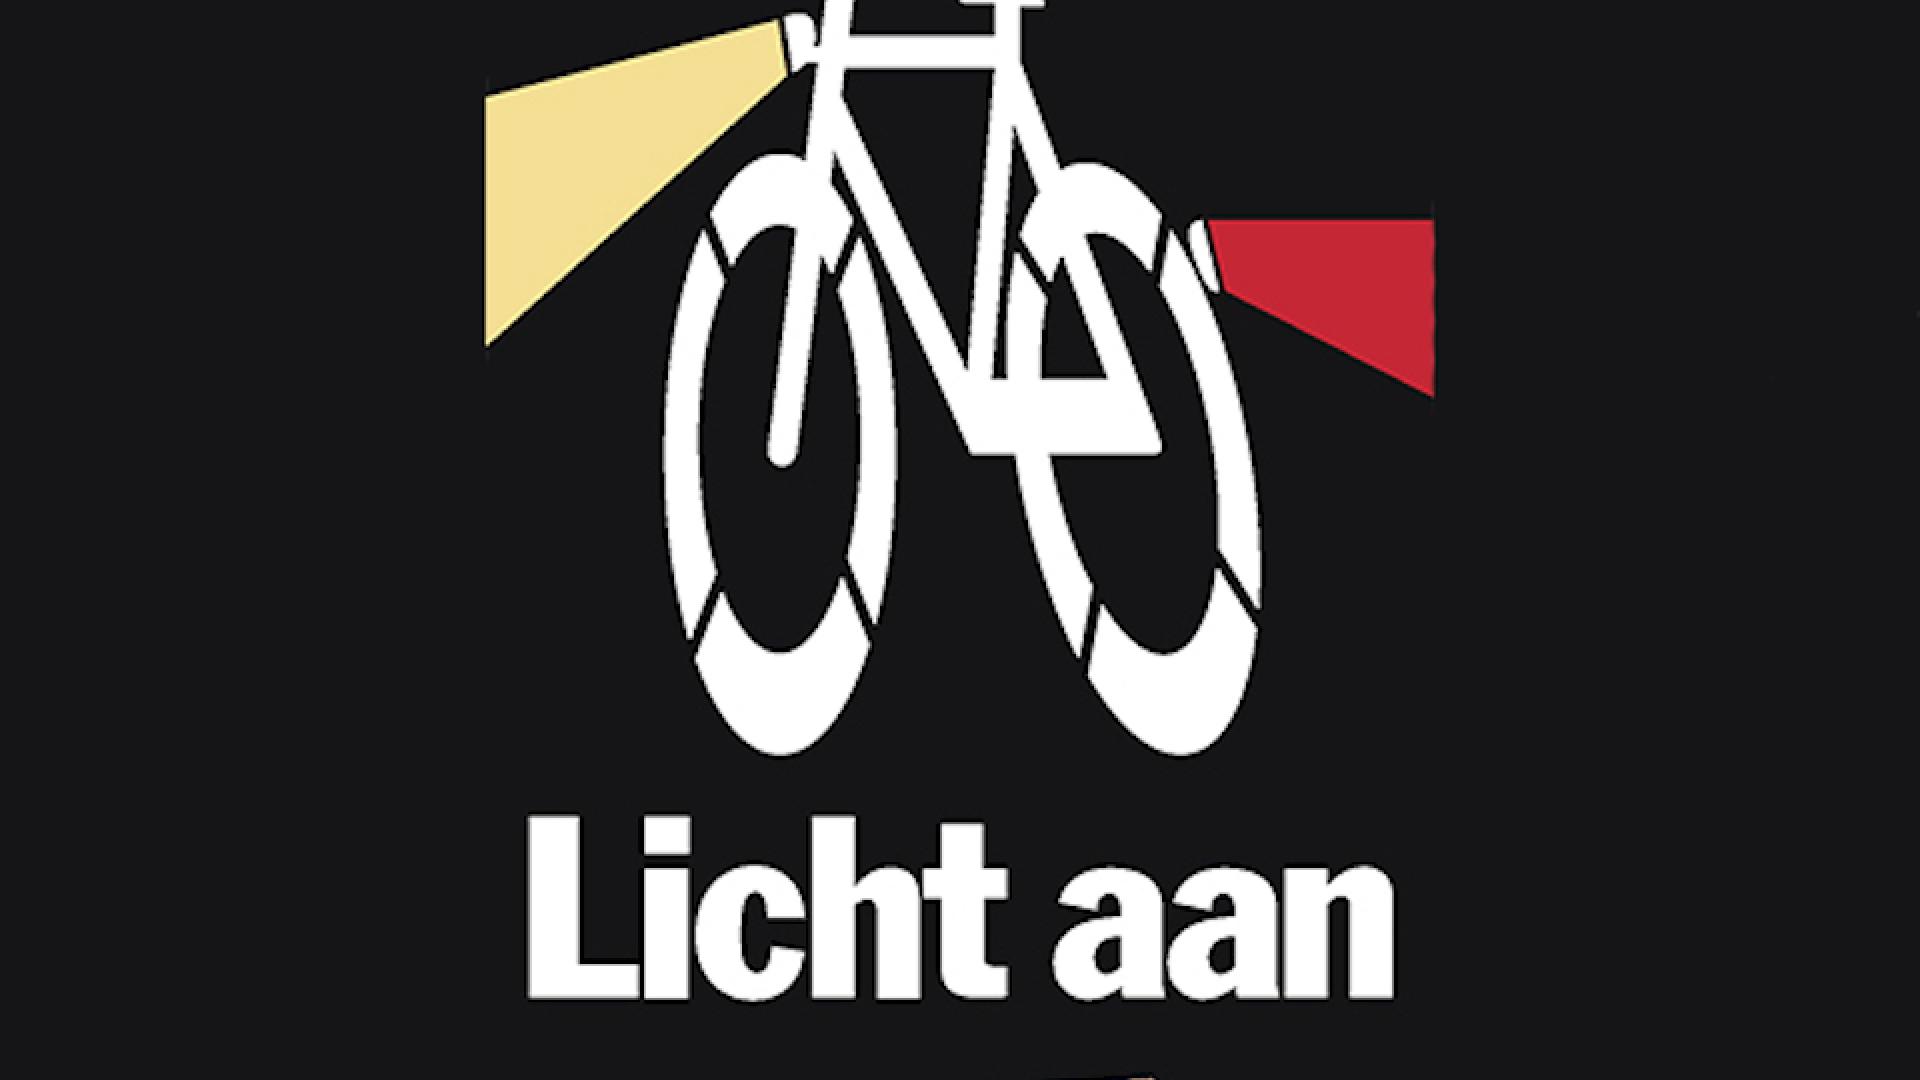 jaarlijkse fietsverlichtingsactie